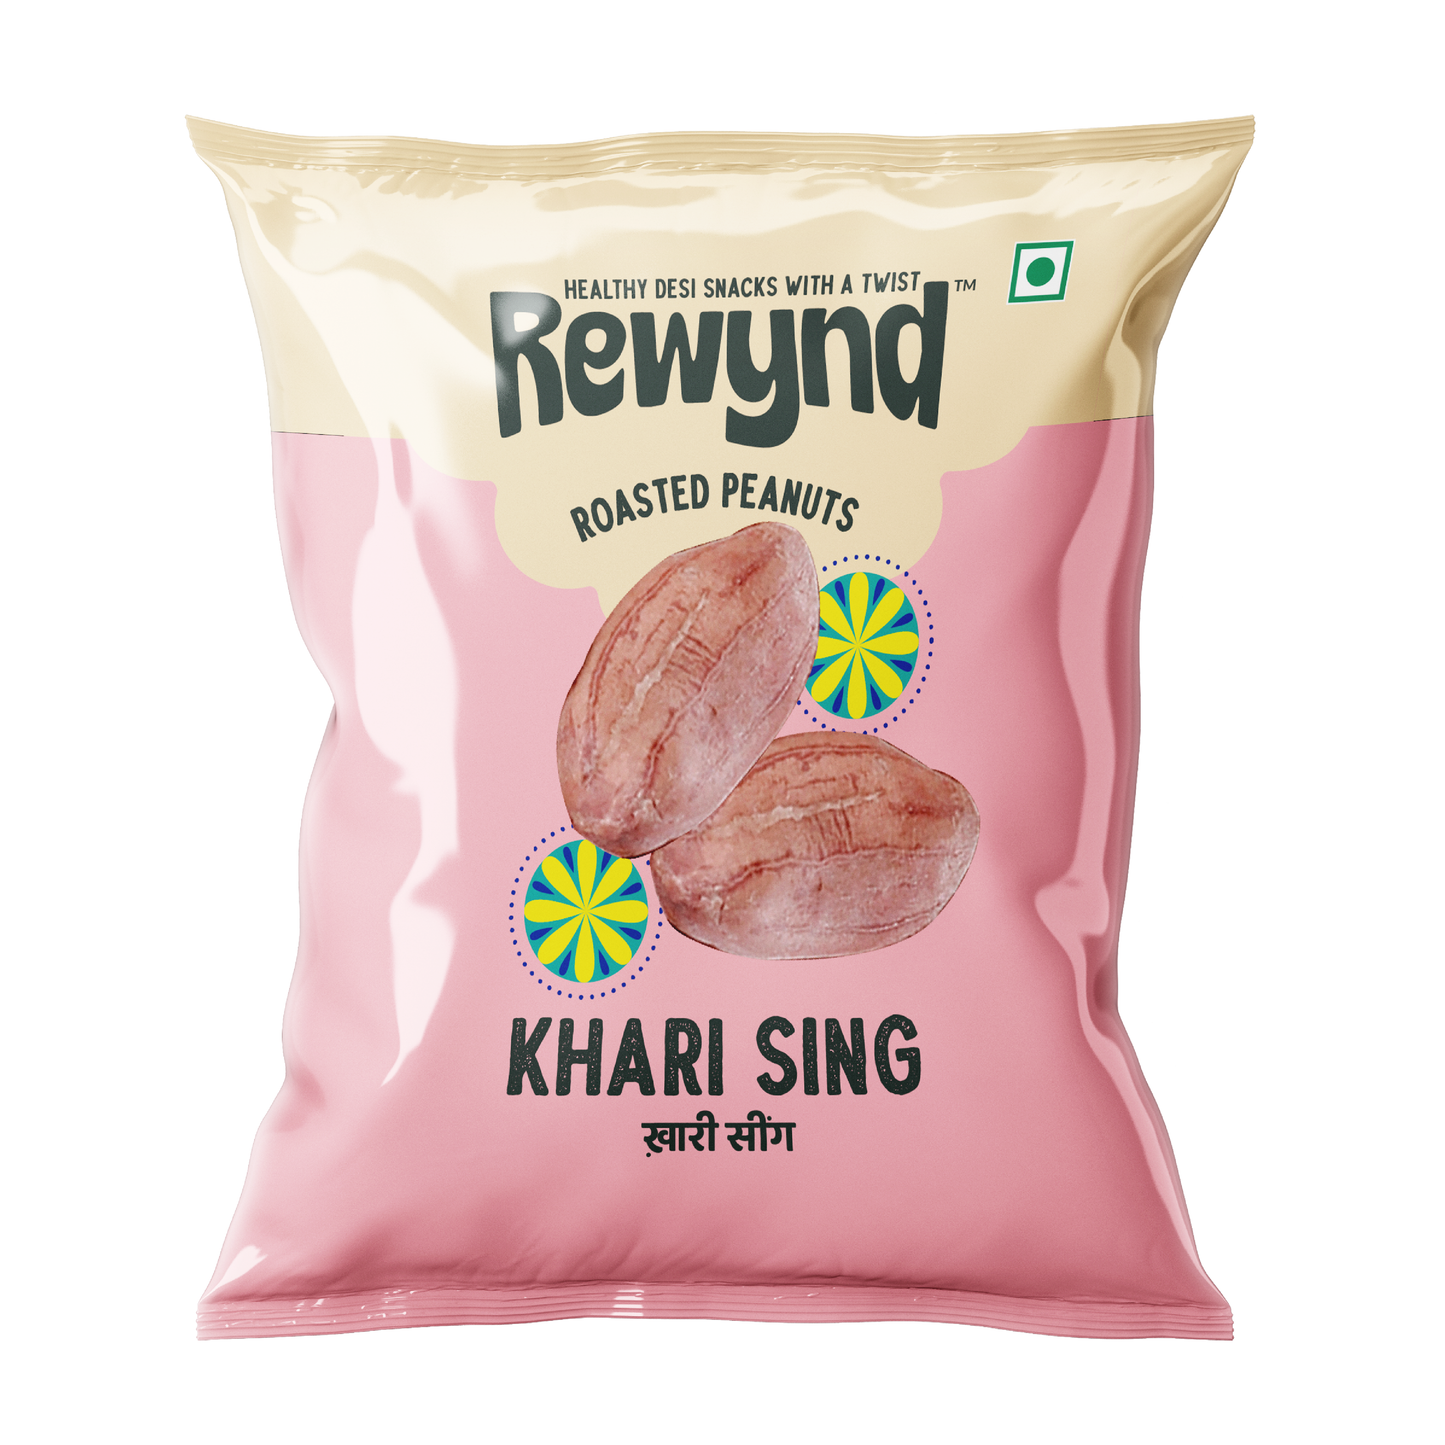 Khari Sing